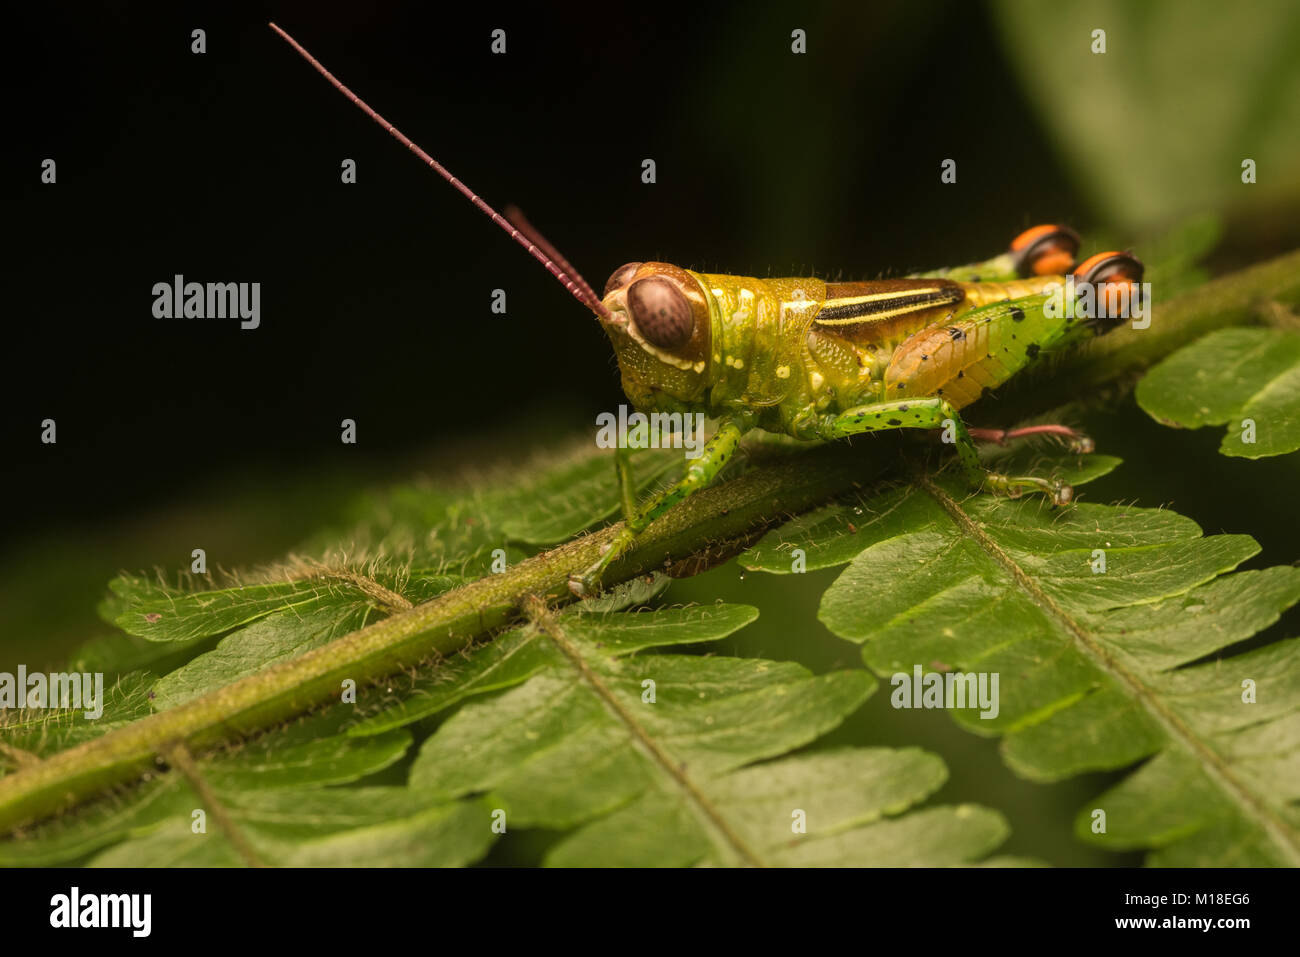 Irgendeine Art von kleinen und bunten Heuschrecke von der Kolumbianischen Amazon. Wahrscheinlich ein Pseudonautia Arten. Stockfoto